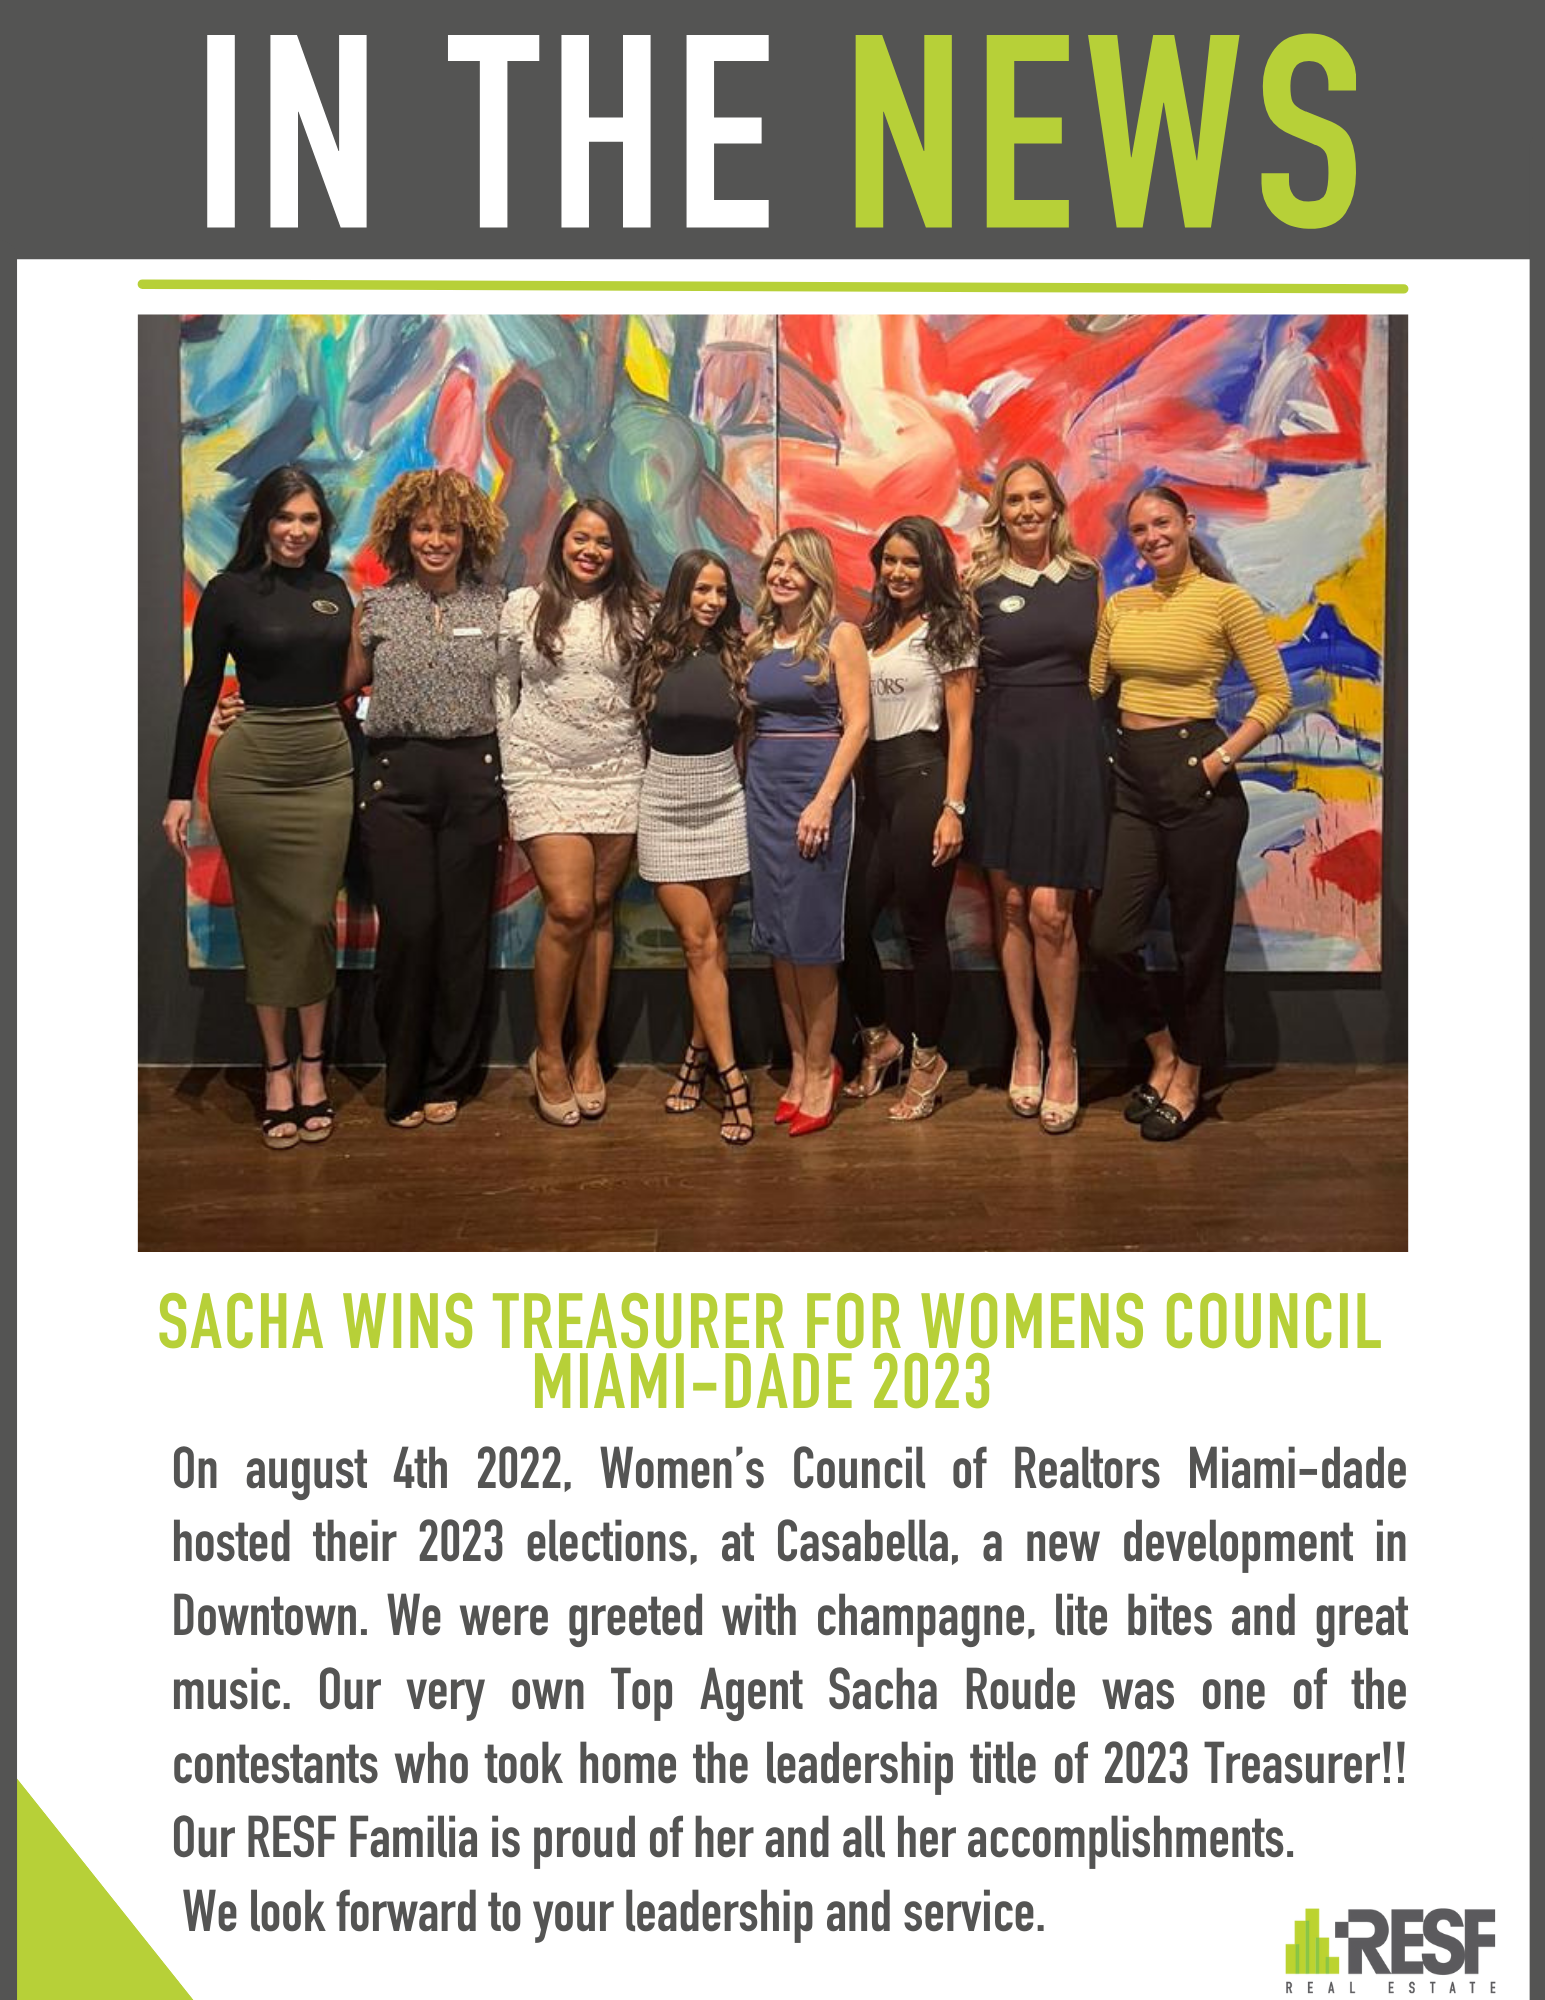 Sacha WINS Treasurer for Womens Council Miami-Dade 2023